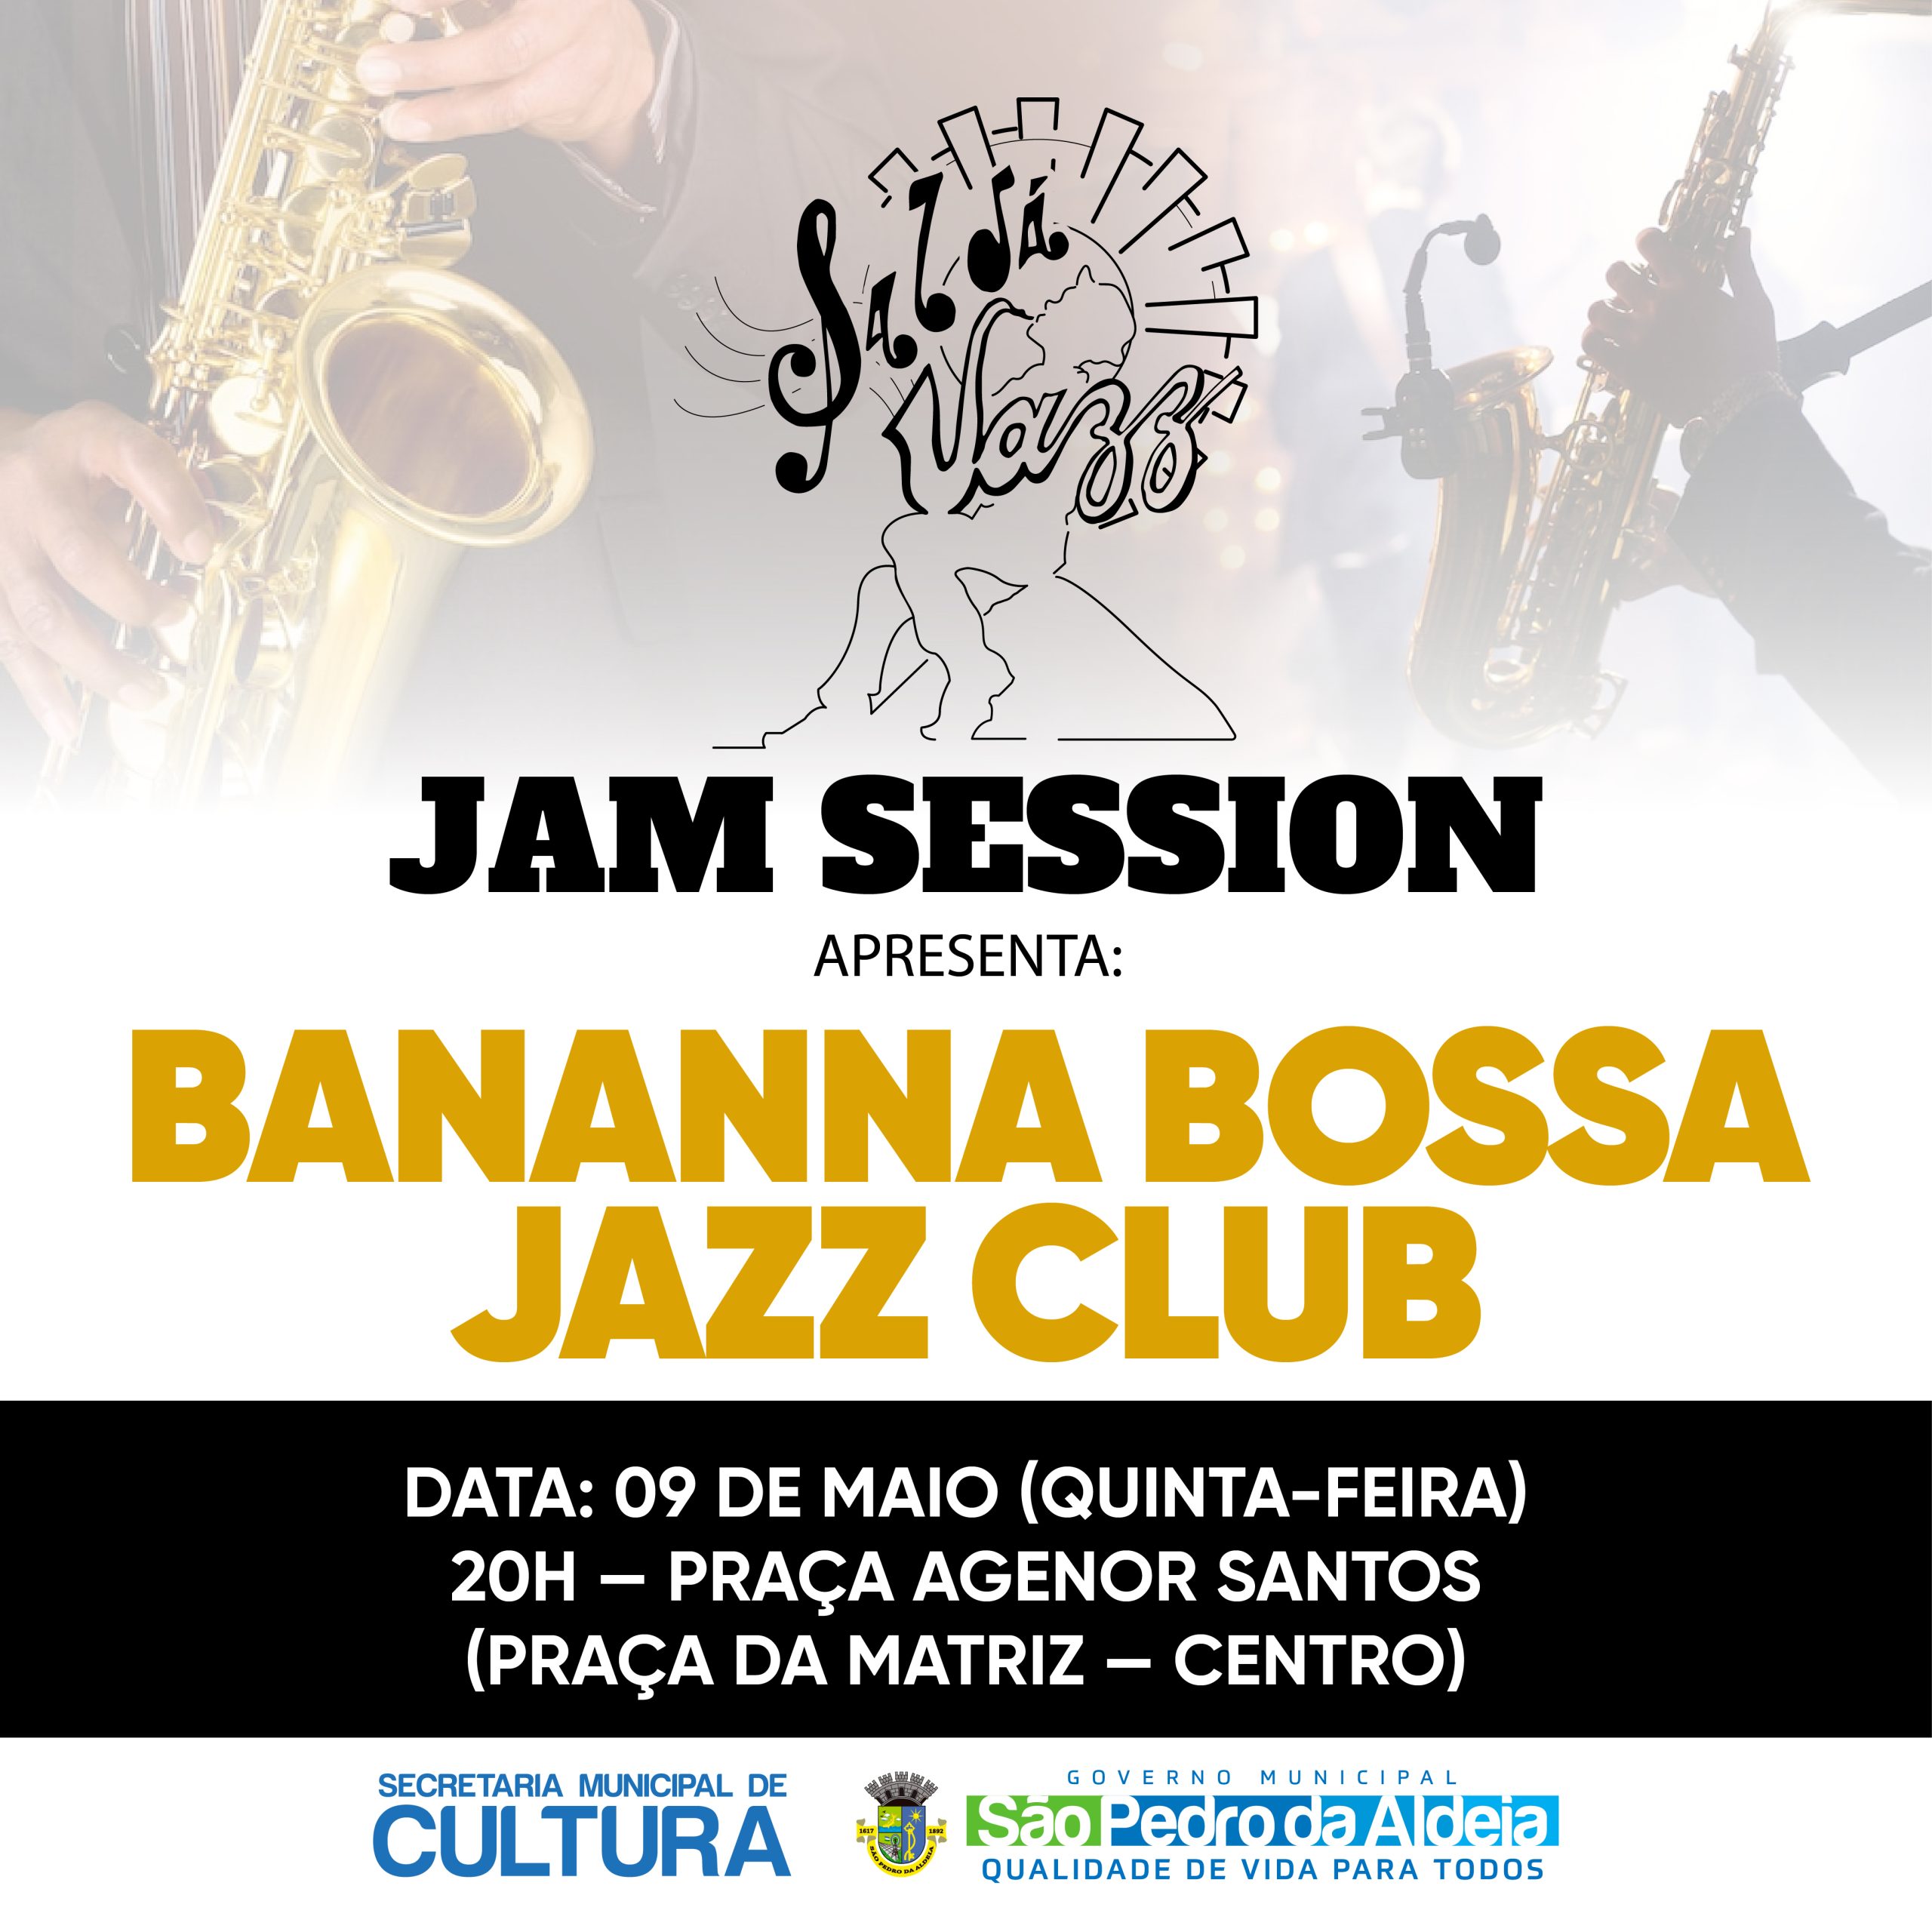 São Pedro da Aldeia apresenta jam session nesta quinta-feira (09)